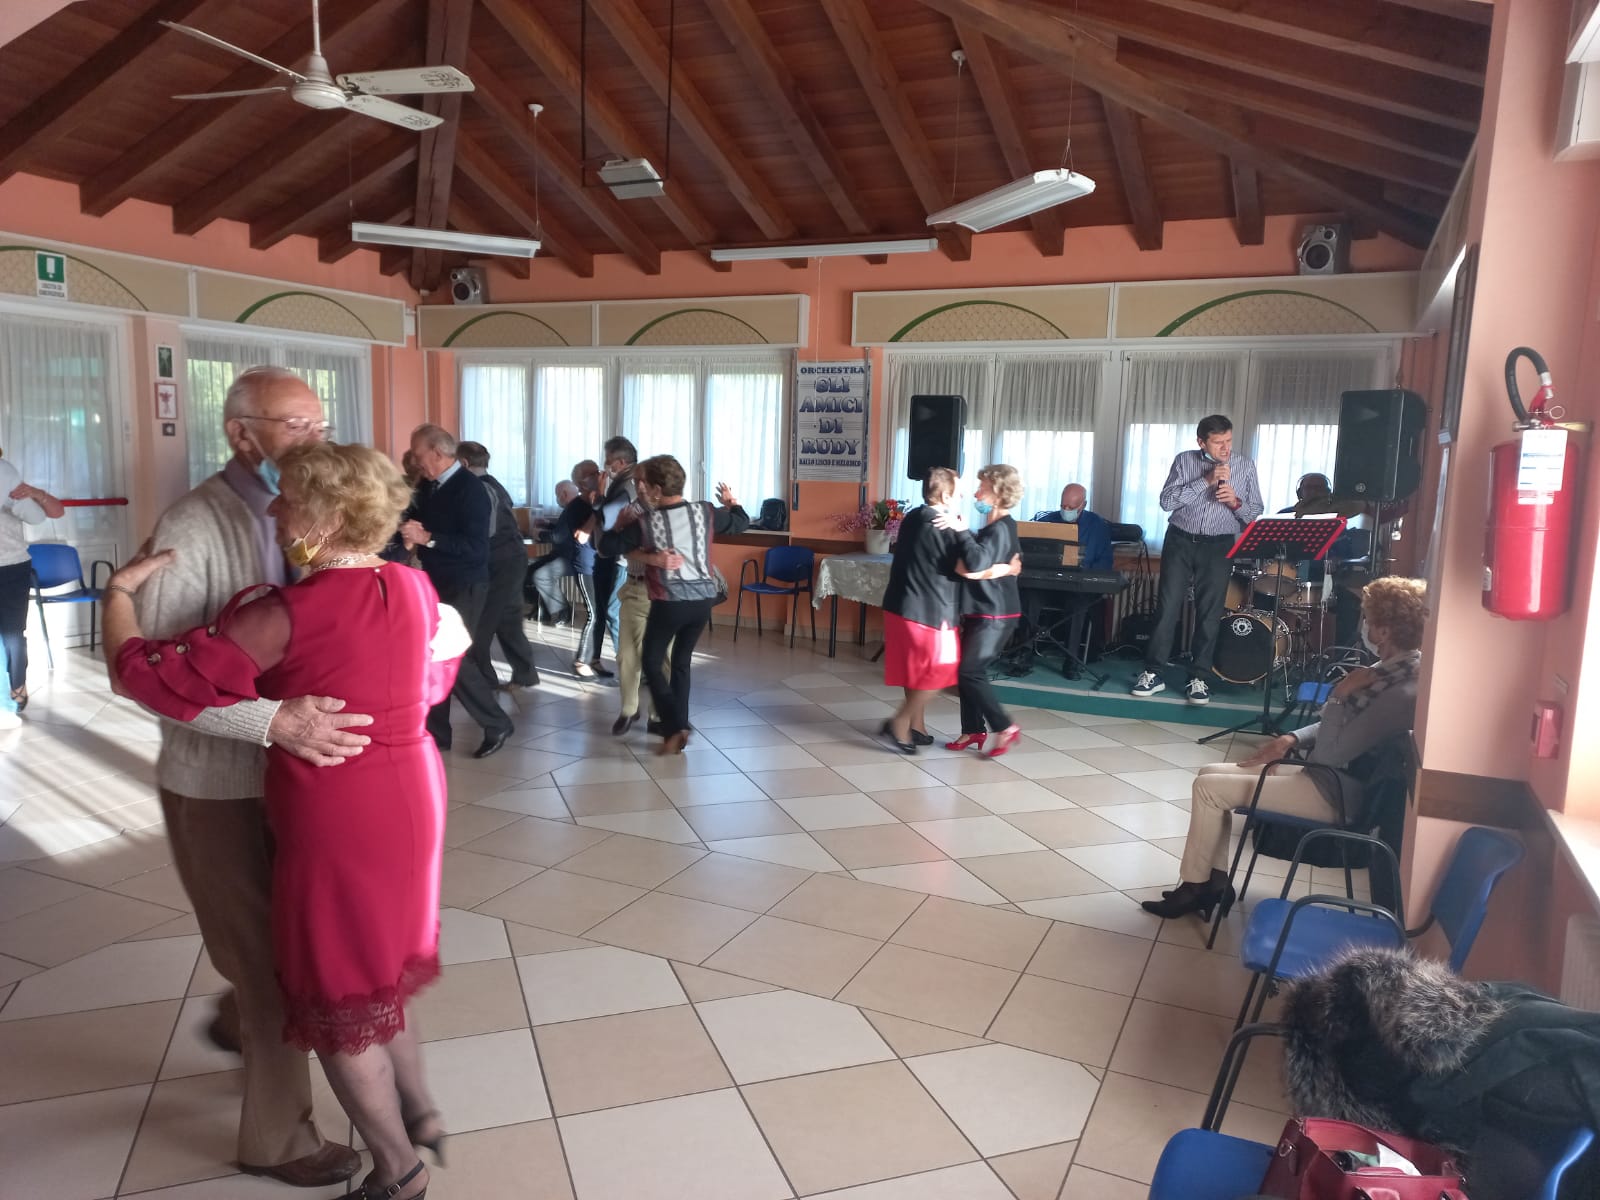 Centro anziani Borgosesia riapre le danze: le foto